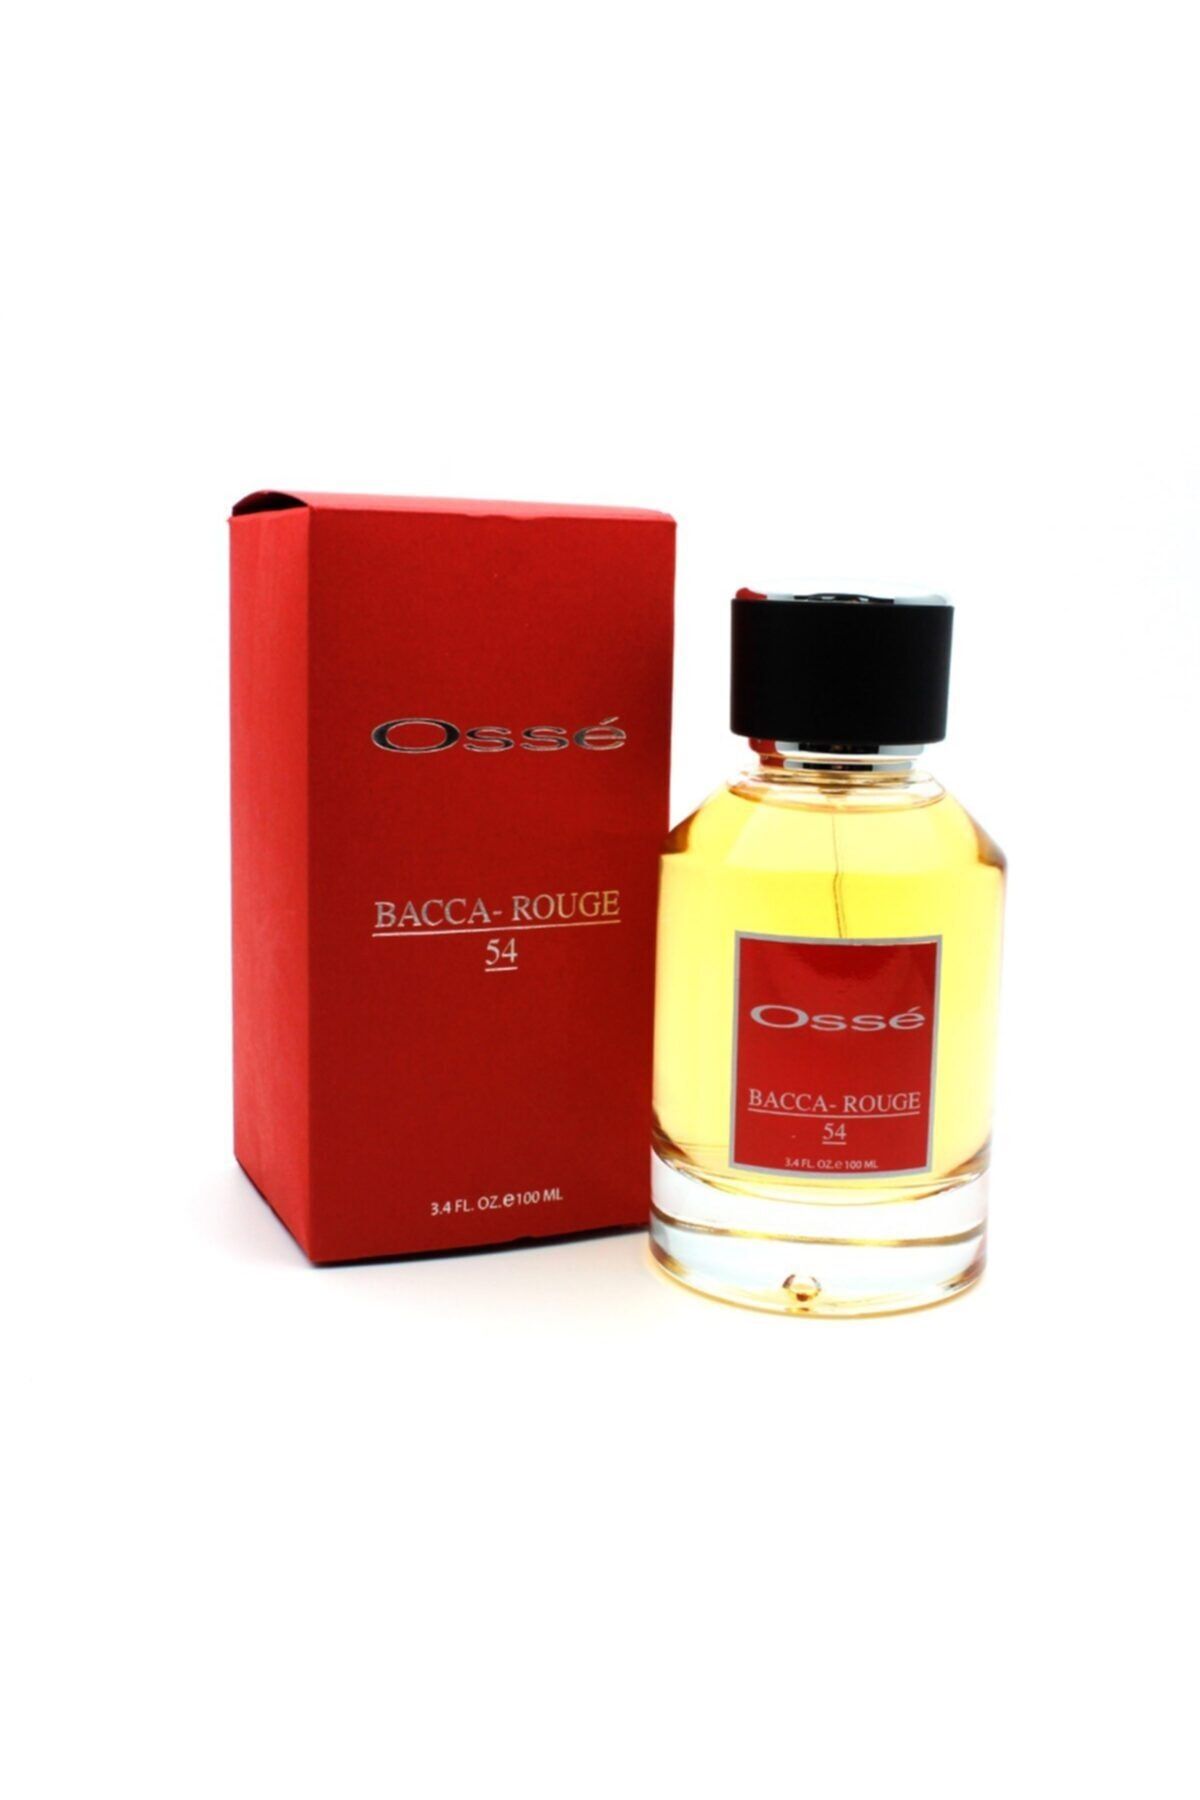 Osse Bacca Rogue Kadın Erkek Parfüm Baccarat Rouge 8682391076523